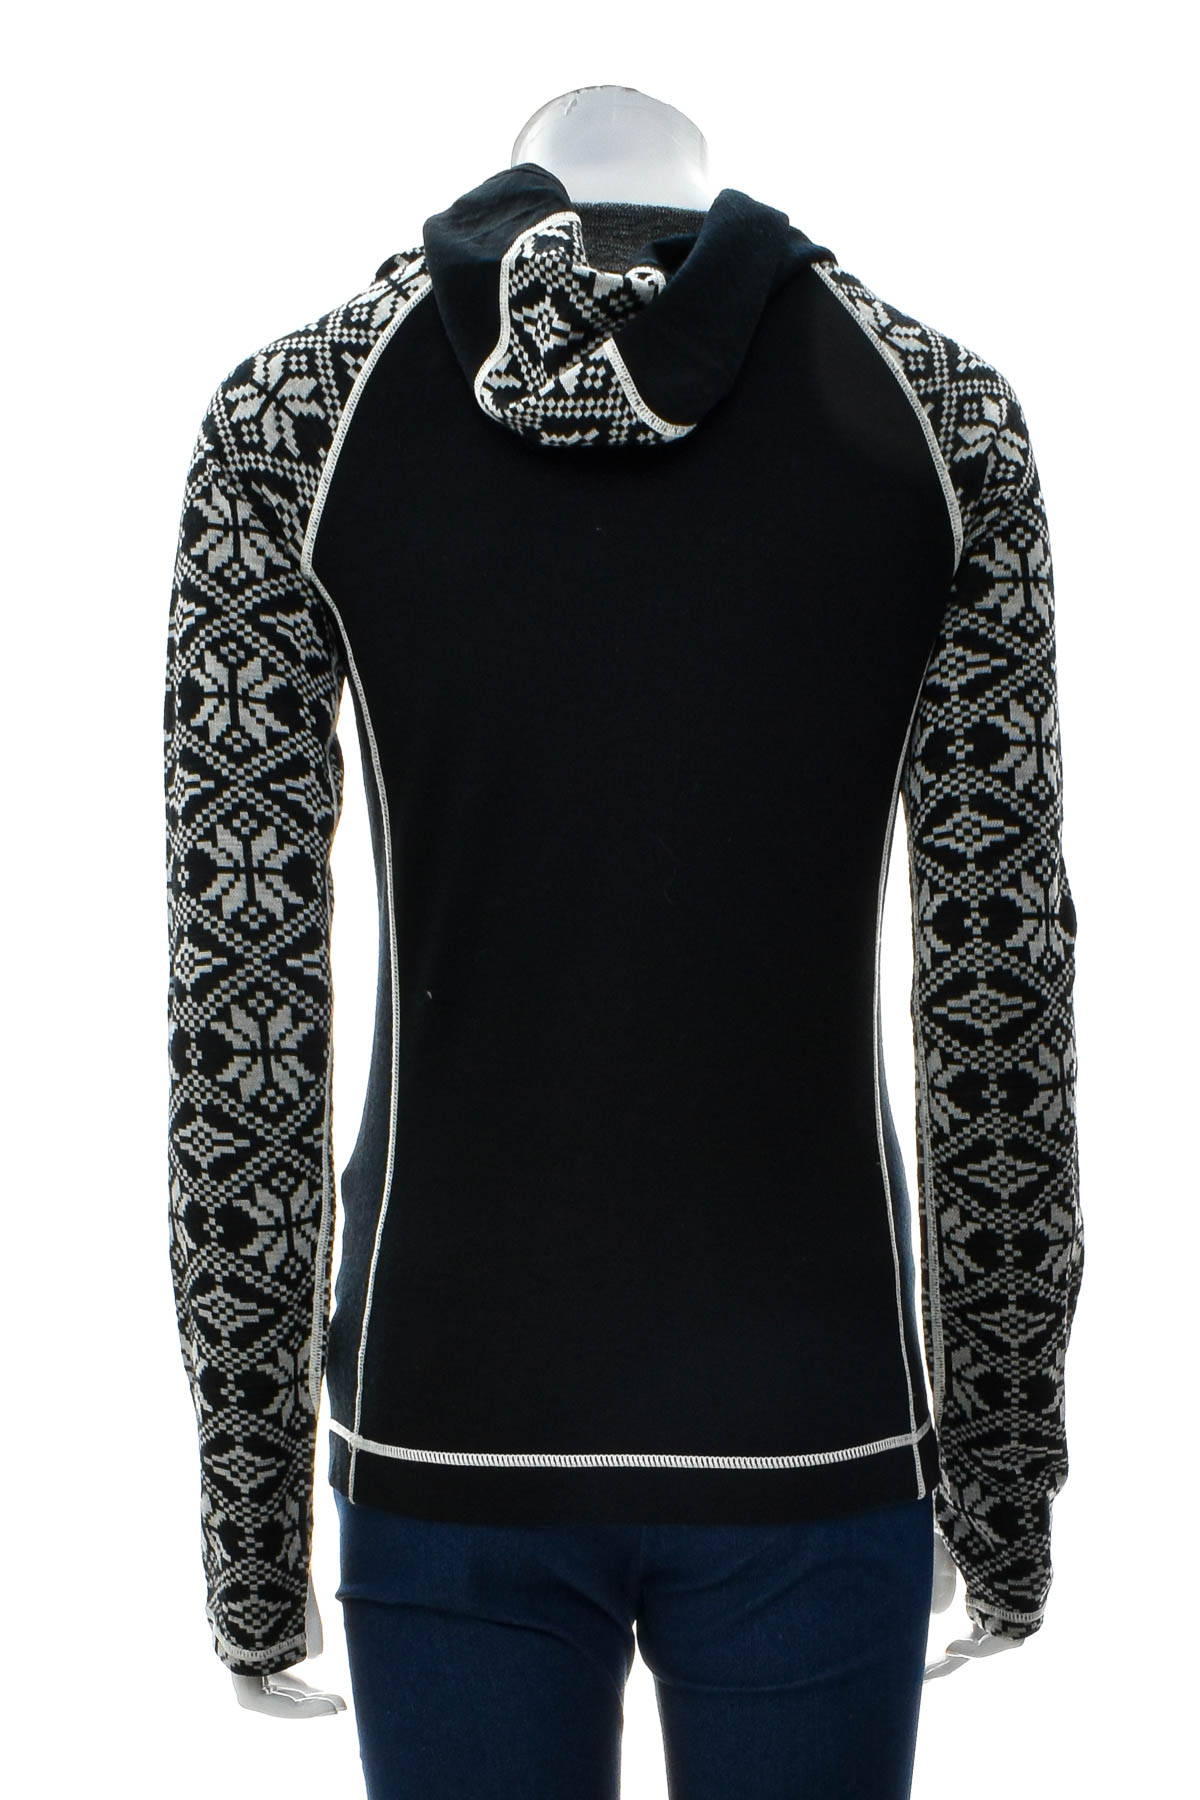 Дамска спортна блуза - Telluride Clothing Company - 1